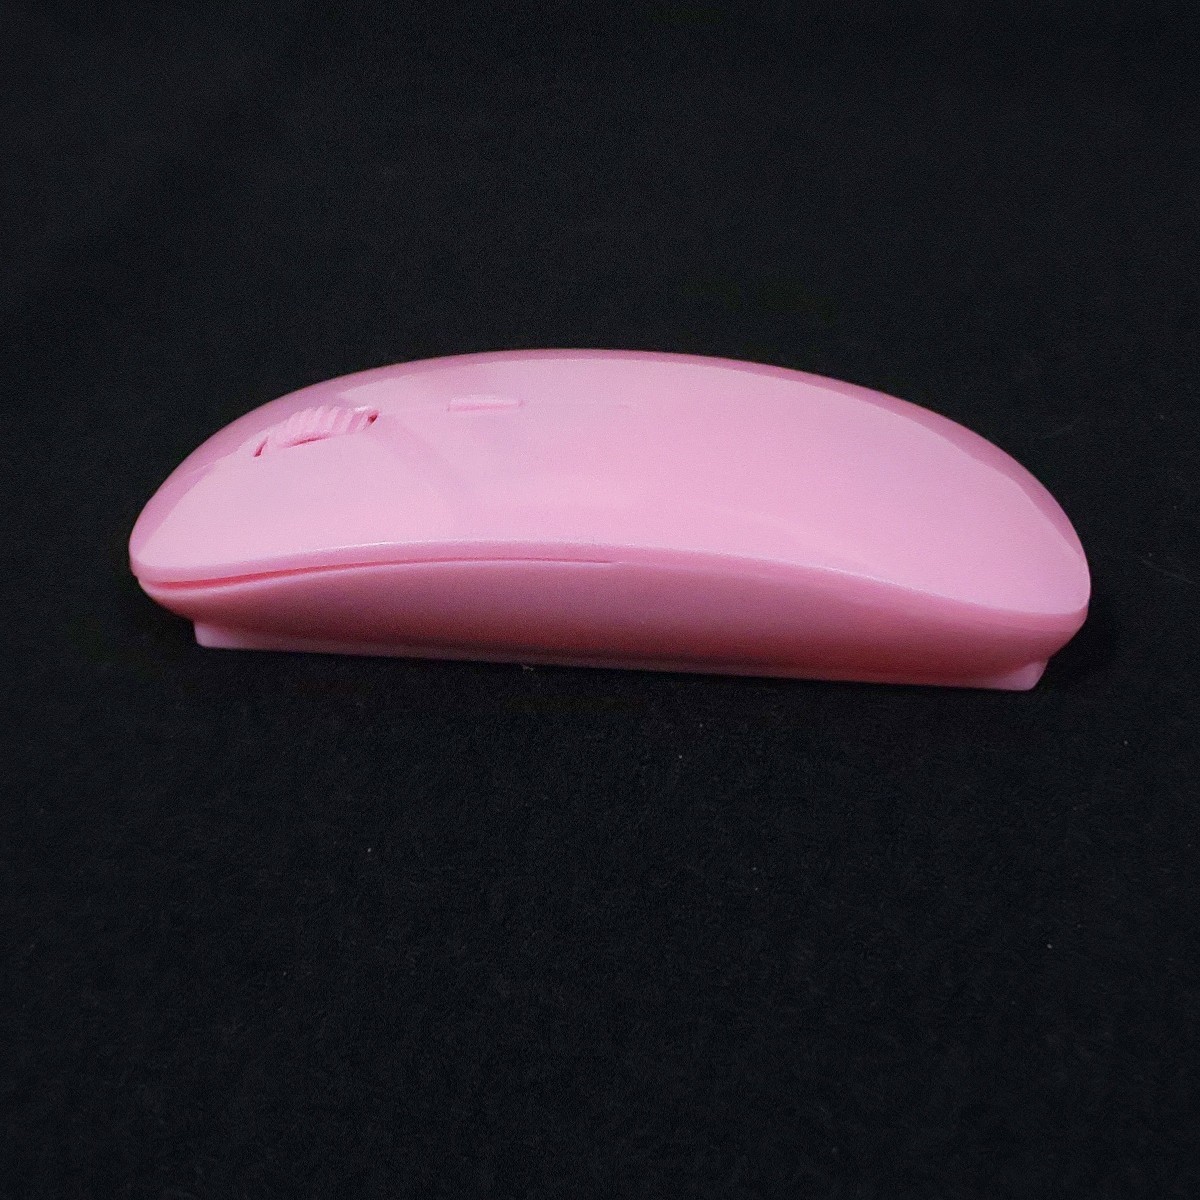 【特価】超薄型 ワイヤレス マウス ★ピンク 光学式 USBレシーバー 人間工学デザイン